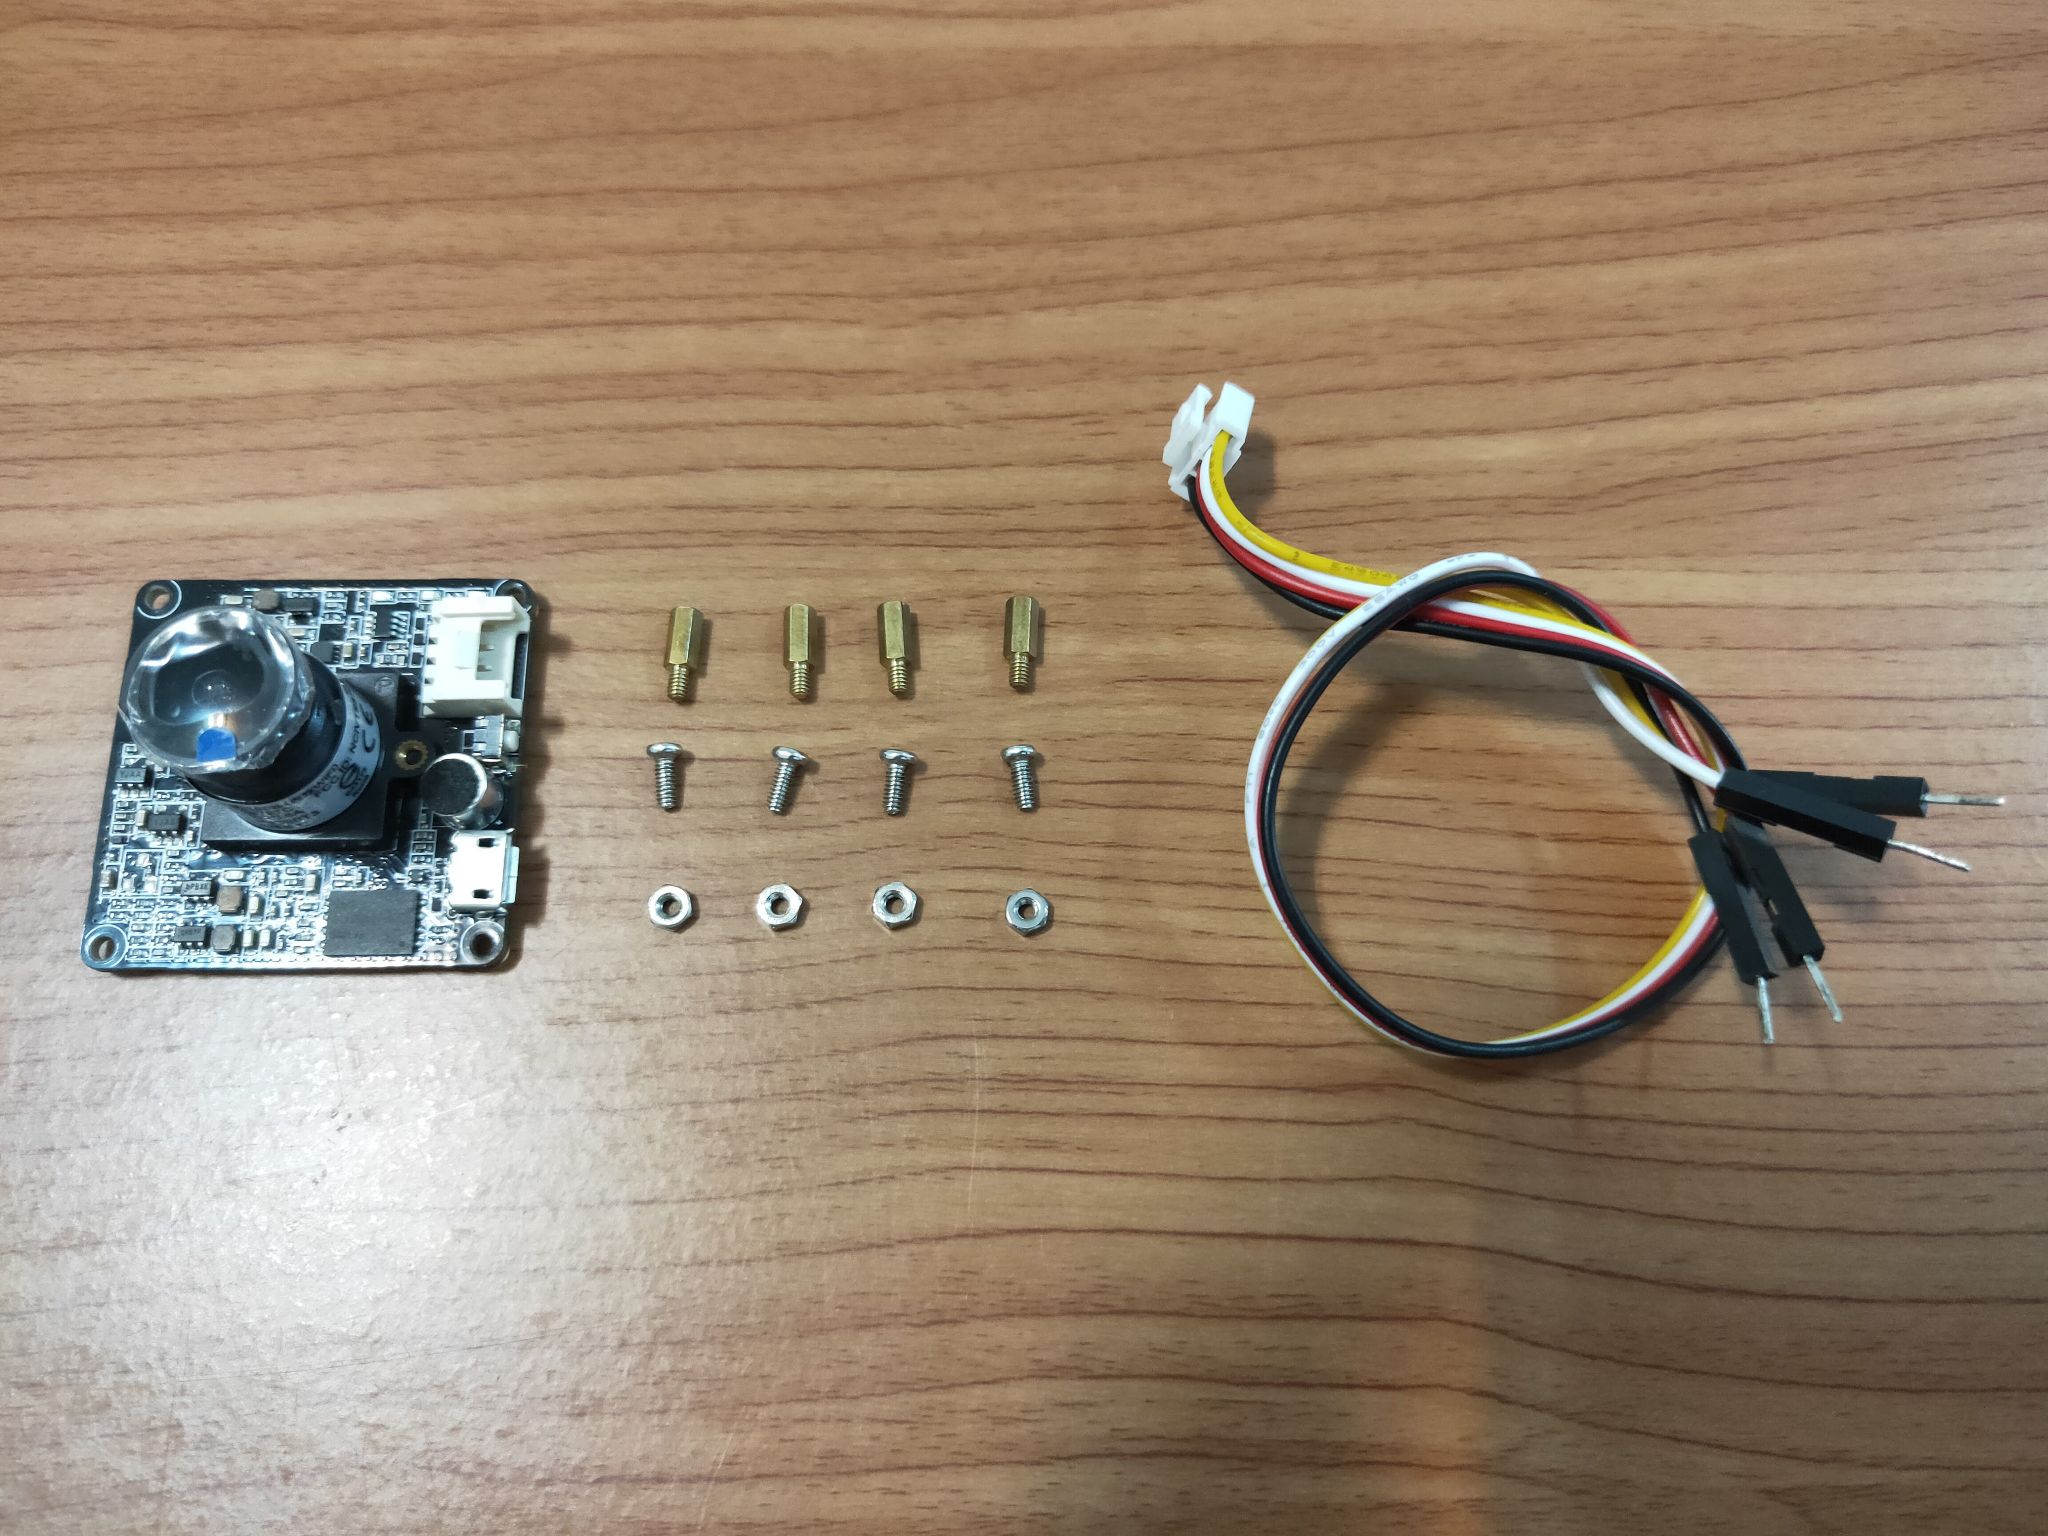 運用 Pixetto 視覺感測器製作人臉辨識門鎖(Arduino UNO)